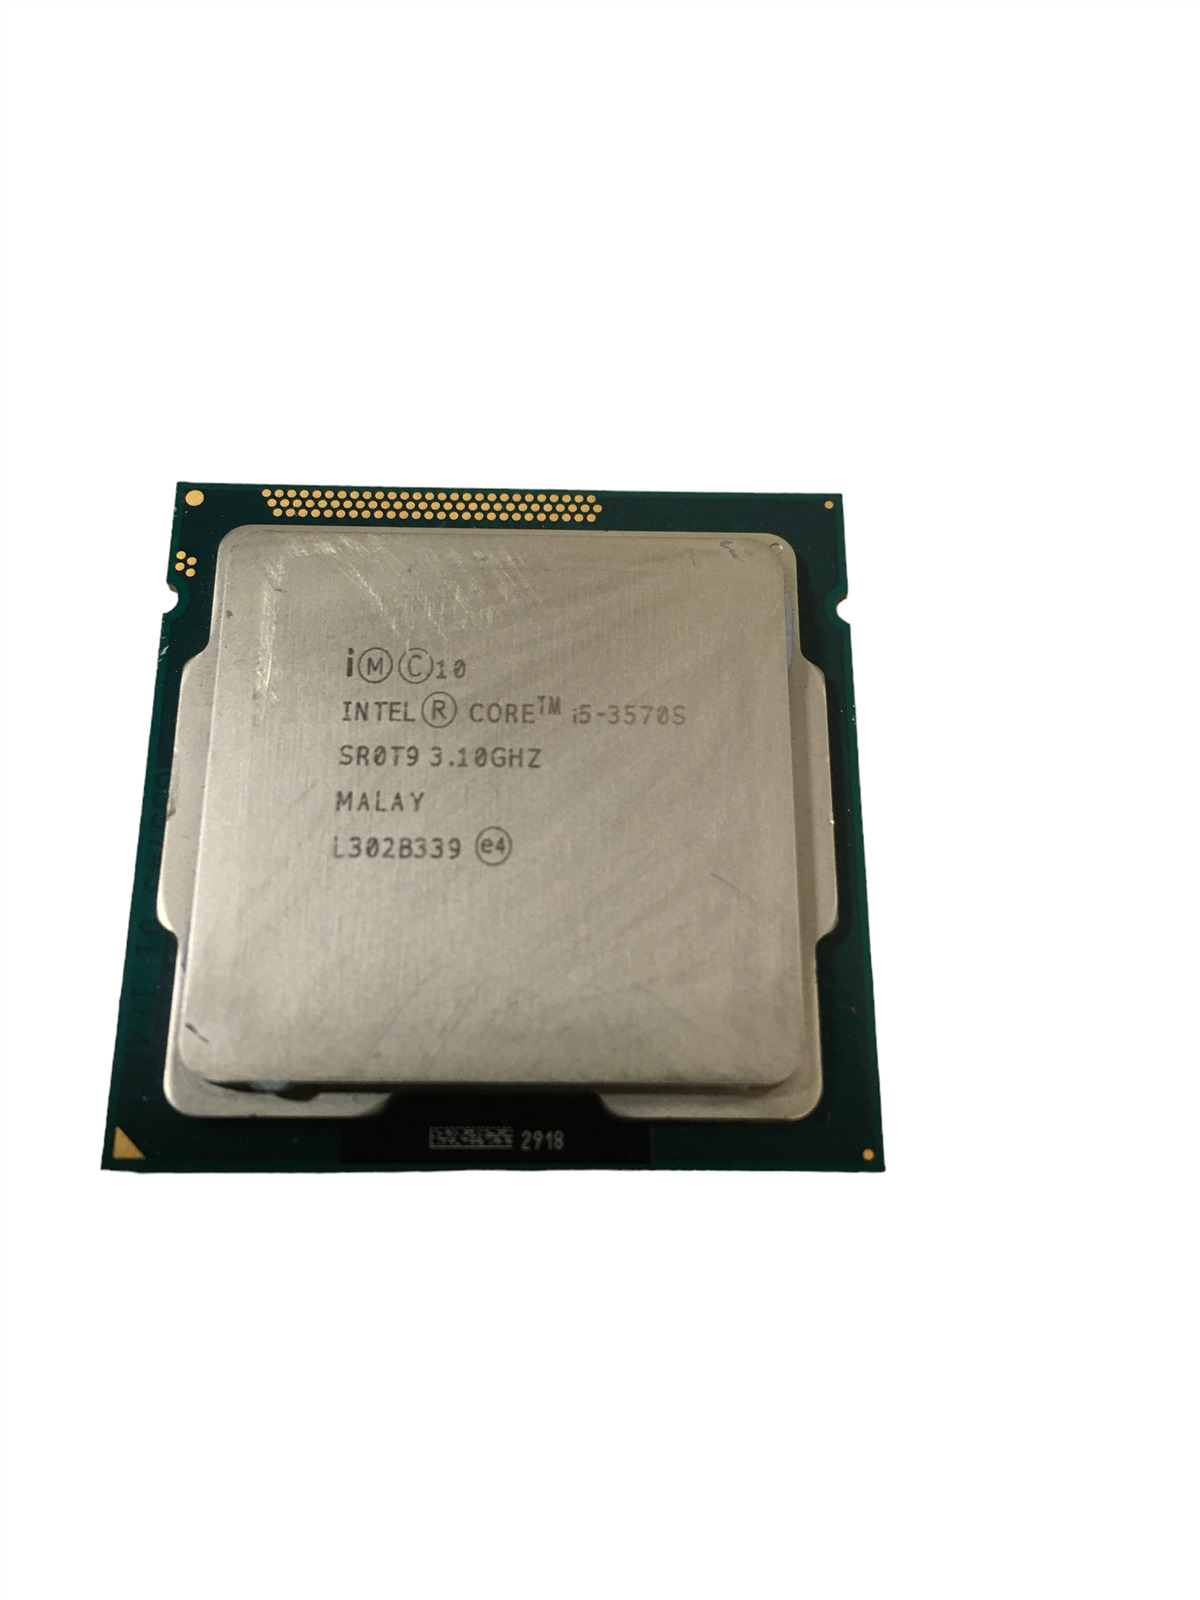 Intel Core i5-3570S (SR0T9) Quad-Core 3.1GHz 6MB LGA1155 CPUs